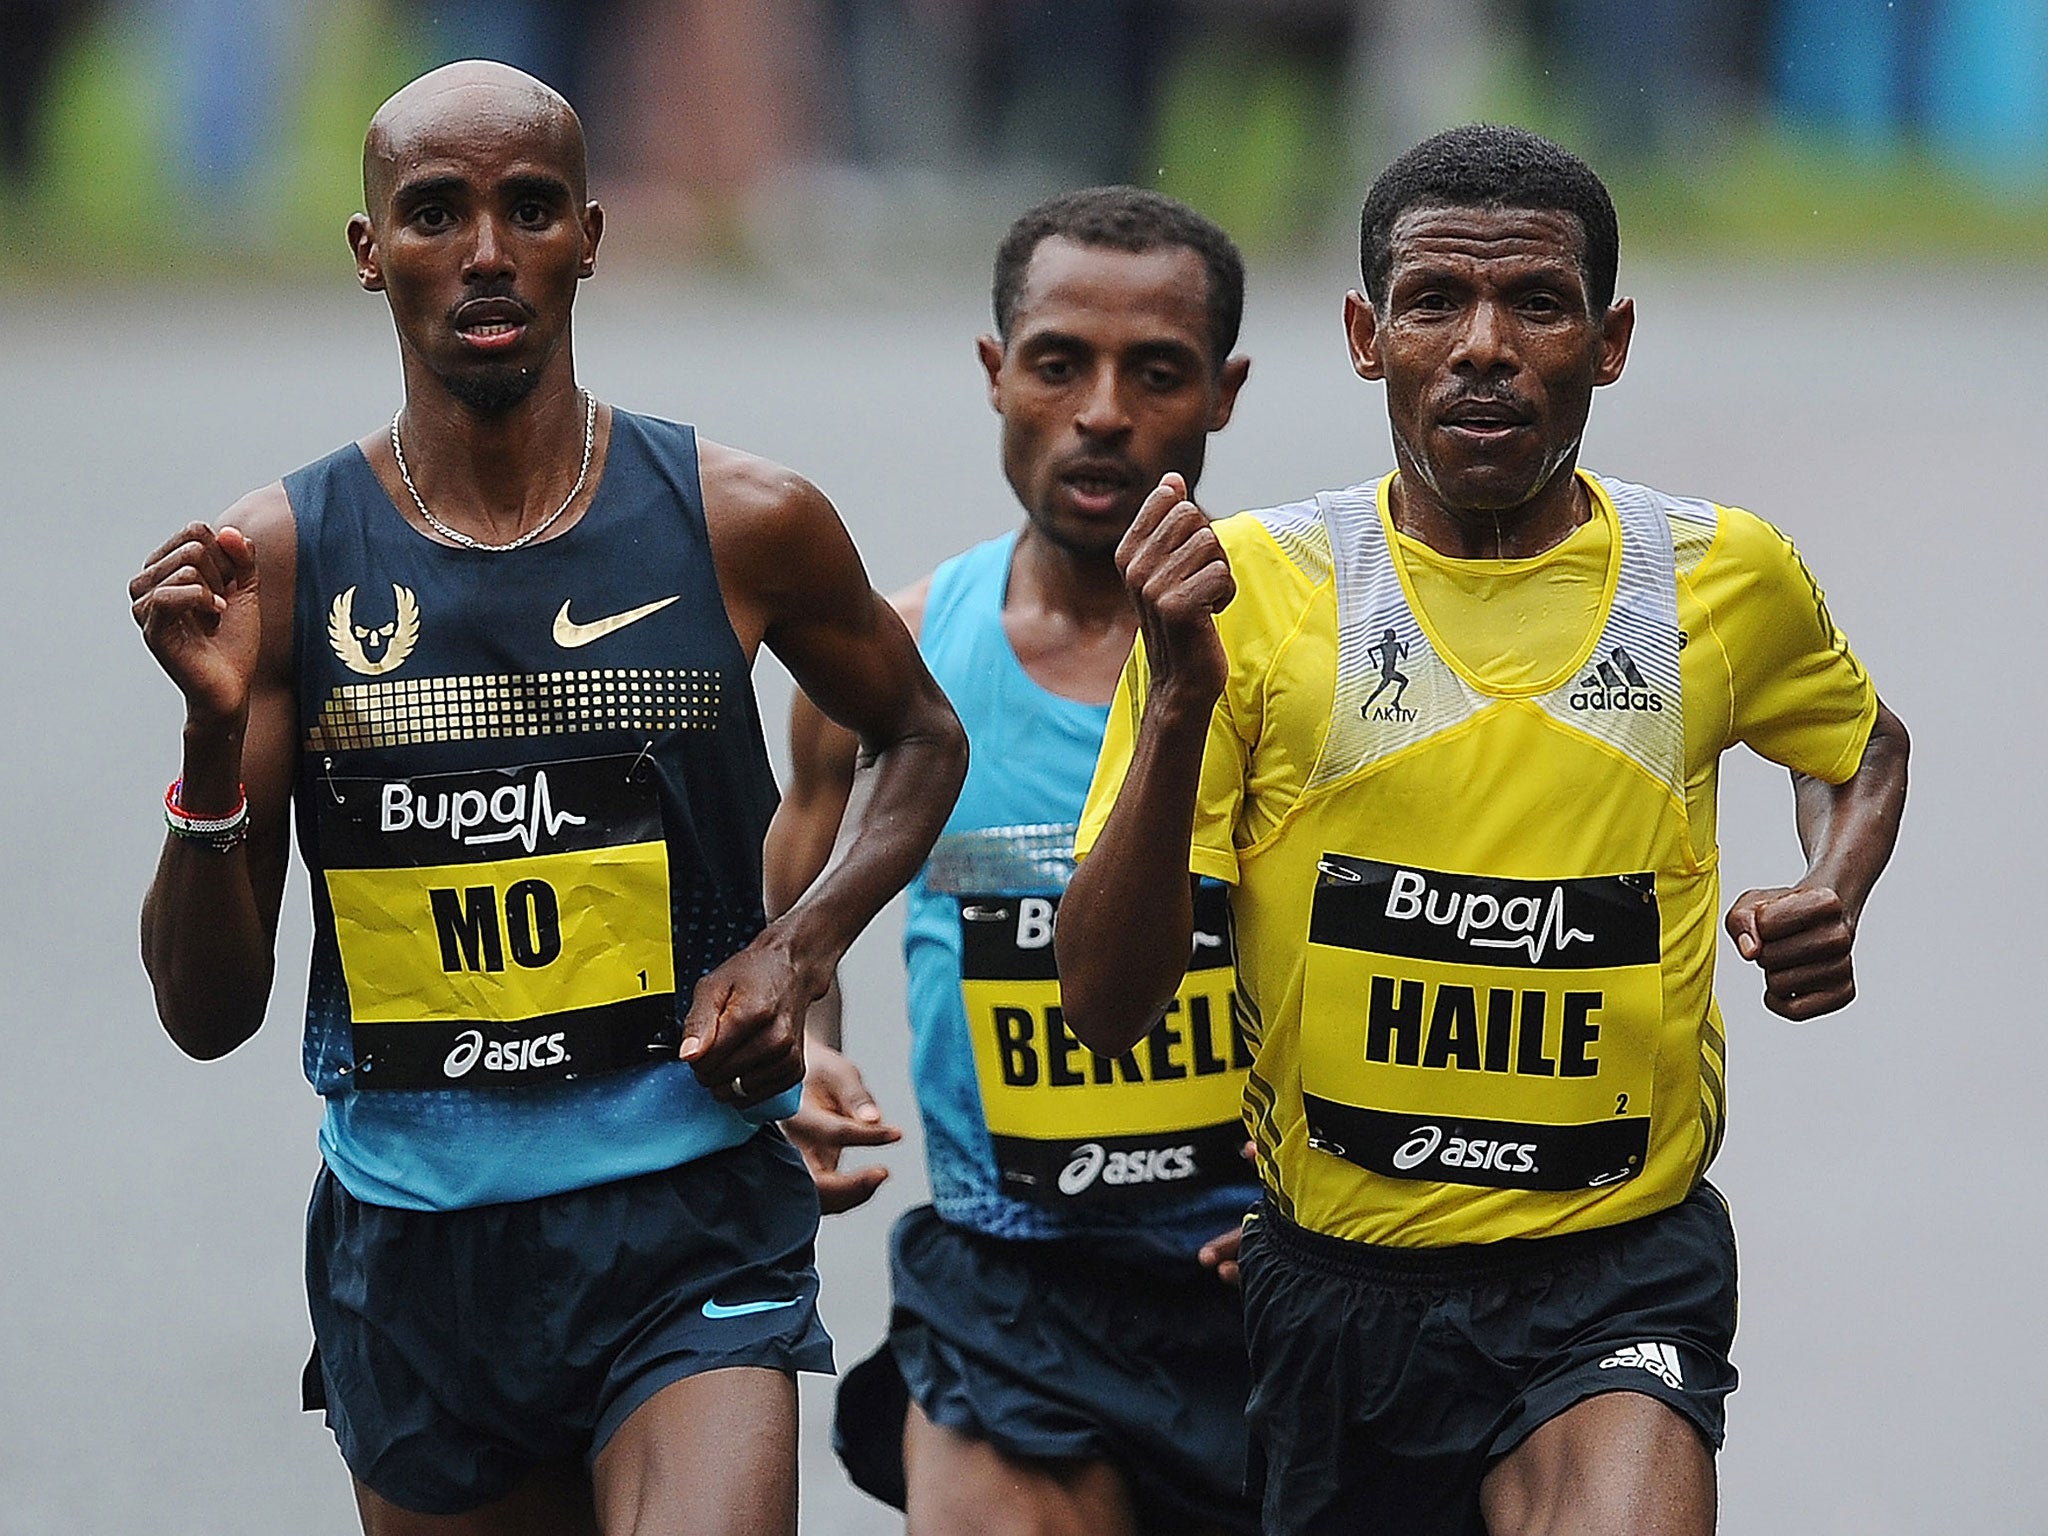 Gebrselassie competing alongside Farah back in 2013